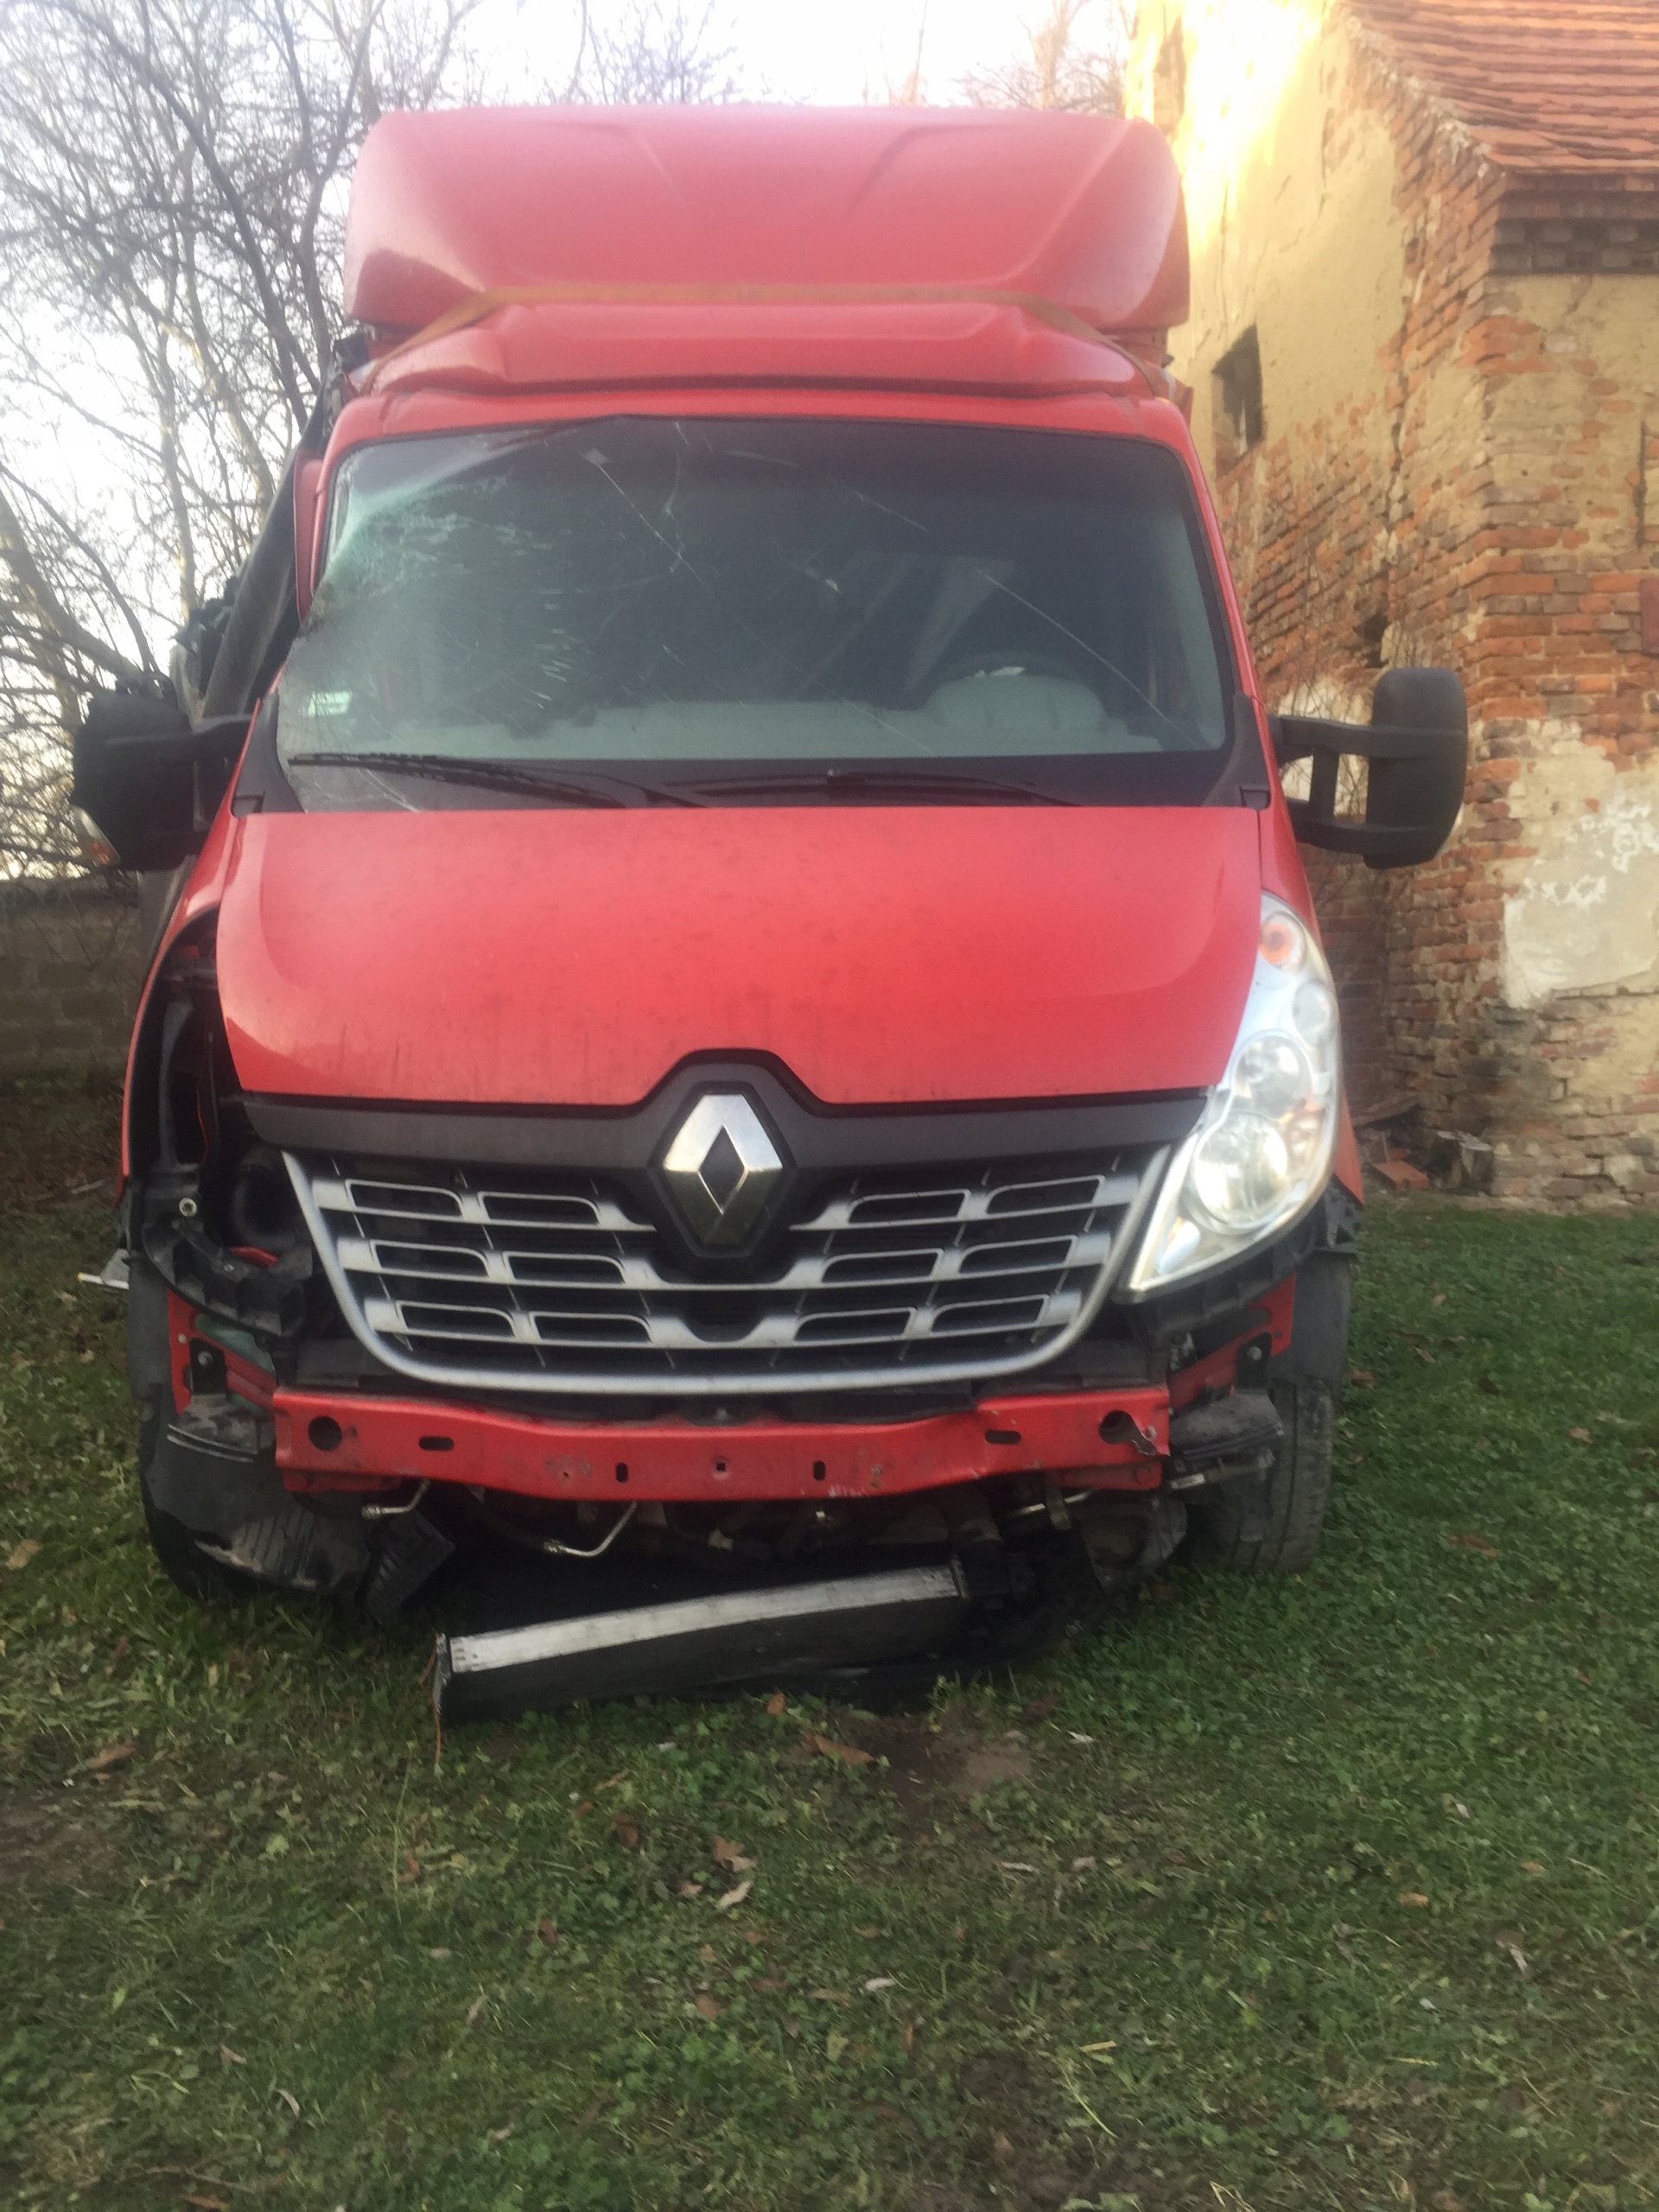 Renault Master 2017 uszkodzony 7722678090 oficjalne